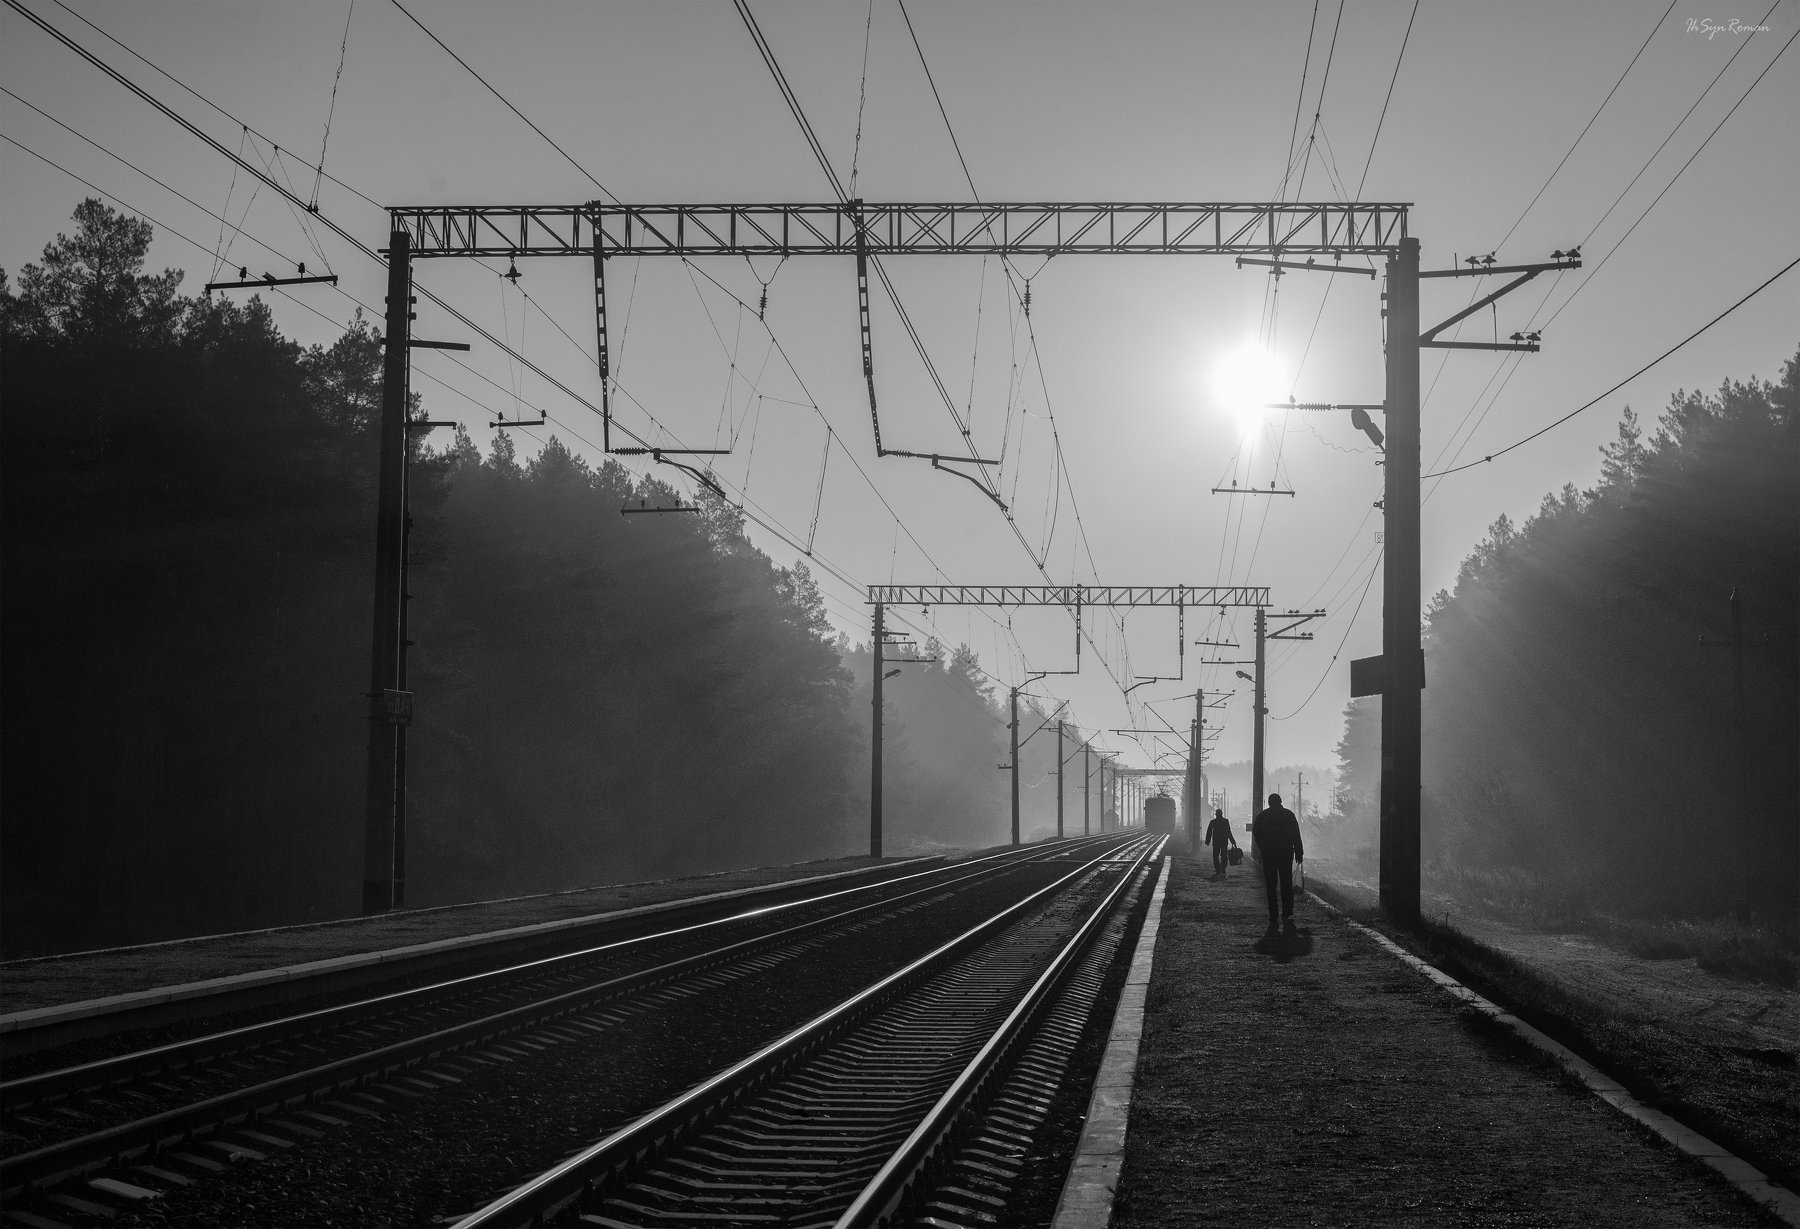 утро, платформа, железная дорога, рельсы, шпалы, поезд, электричка, люди, Roma  Chitinskiy